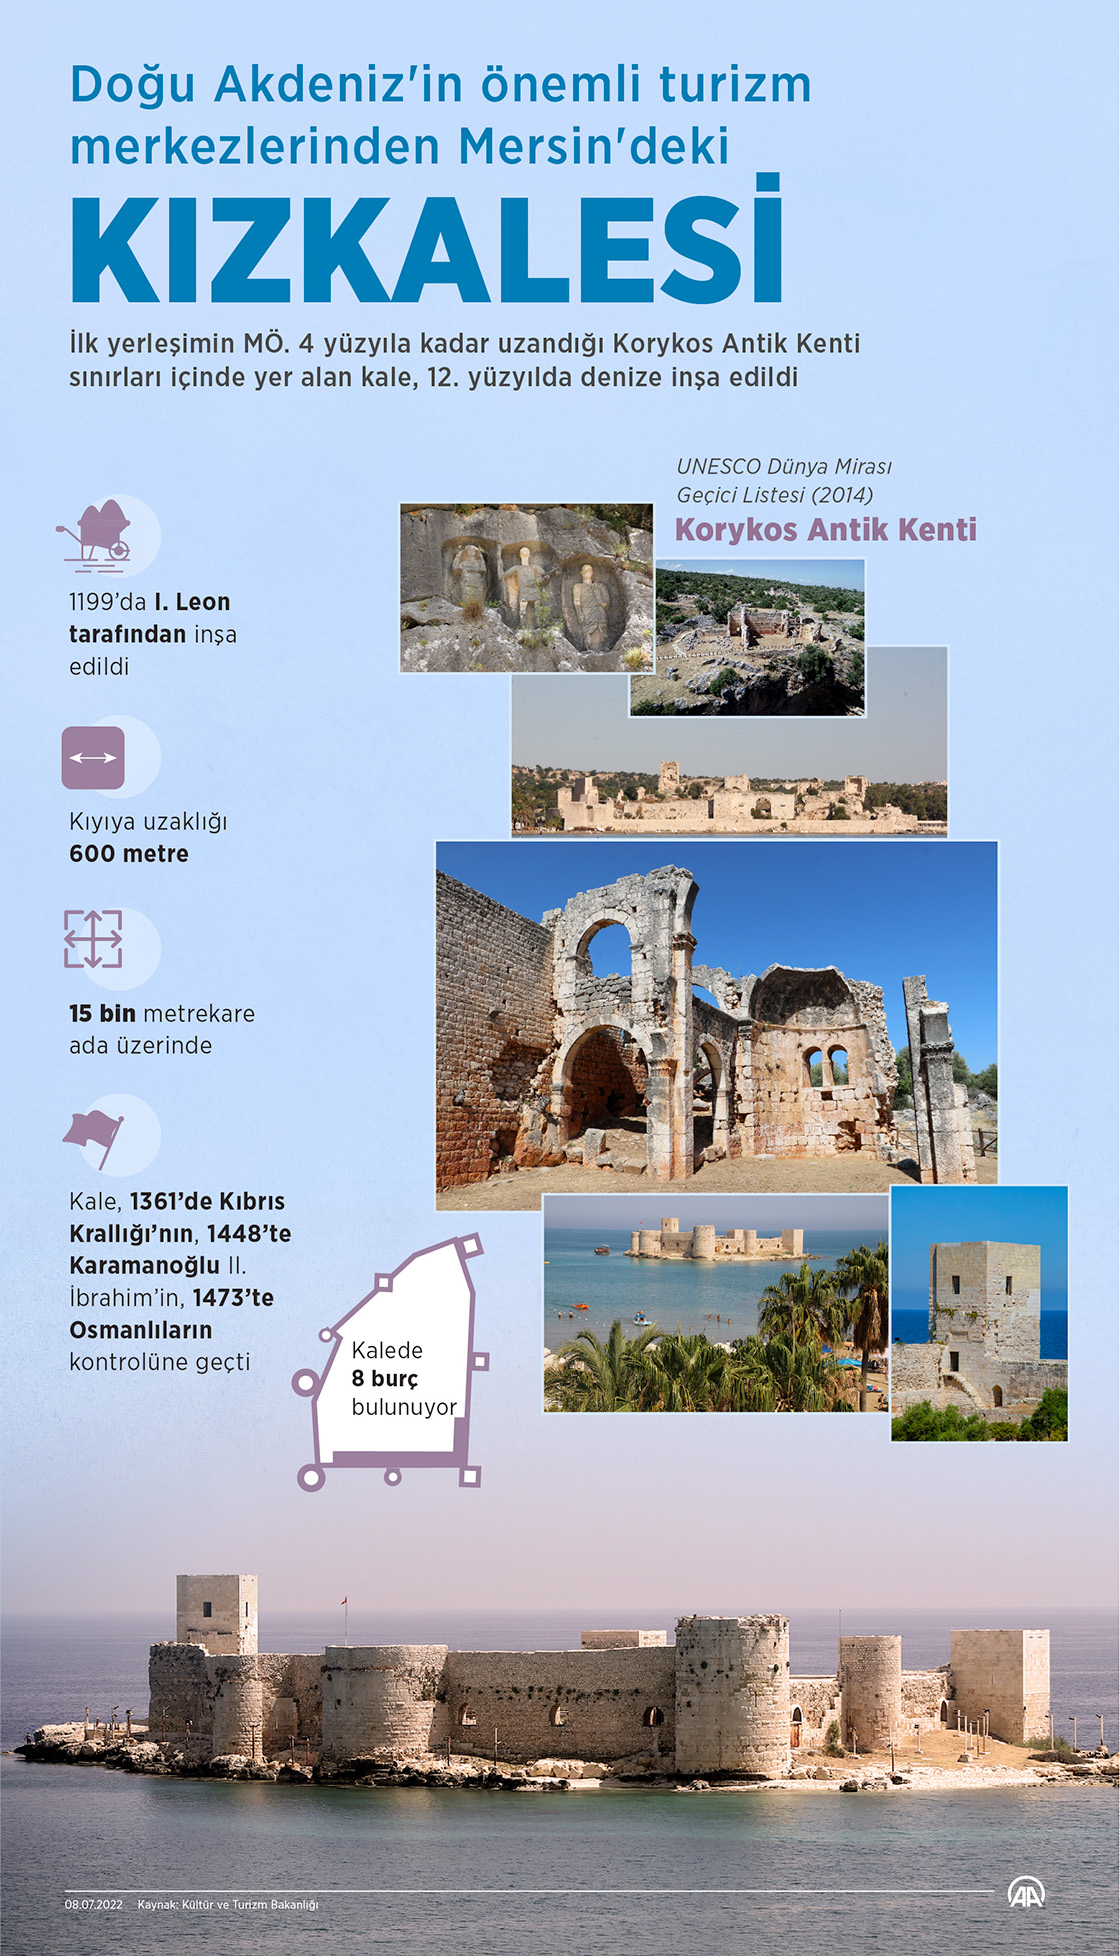 Doğu Akdeniz'in önemli turizm merkezlerinden Mersin'deki Kızkalesi